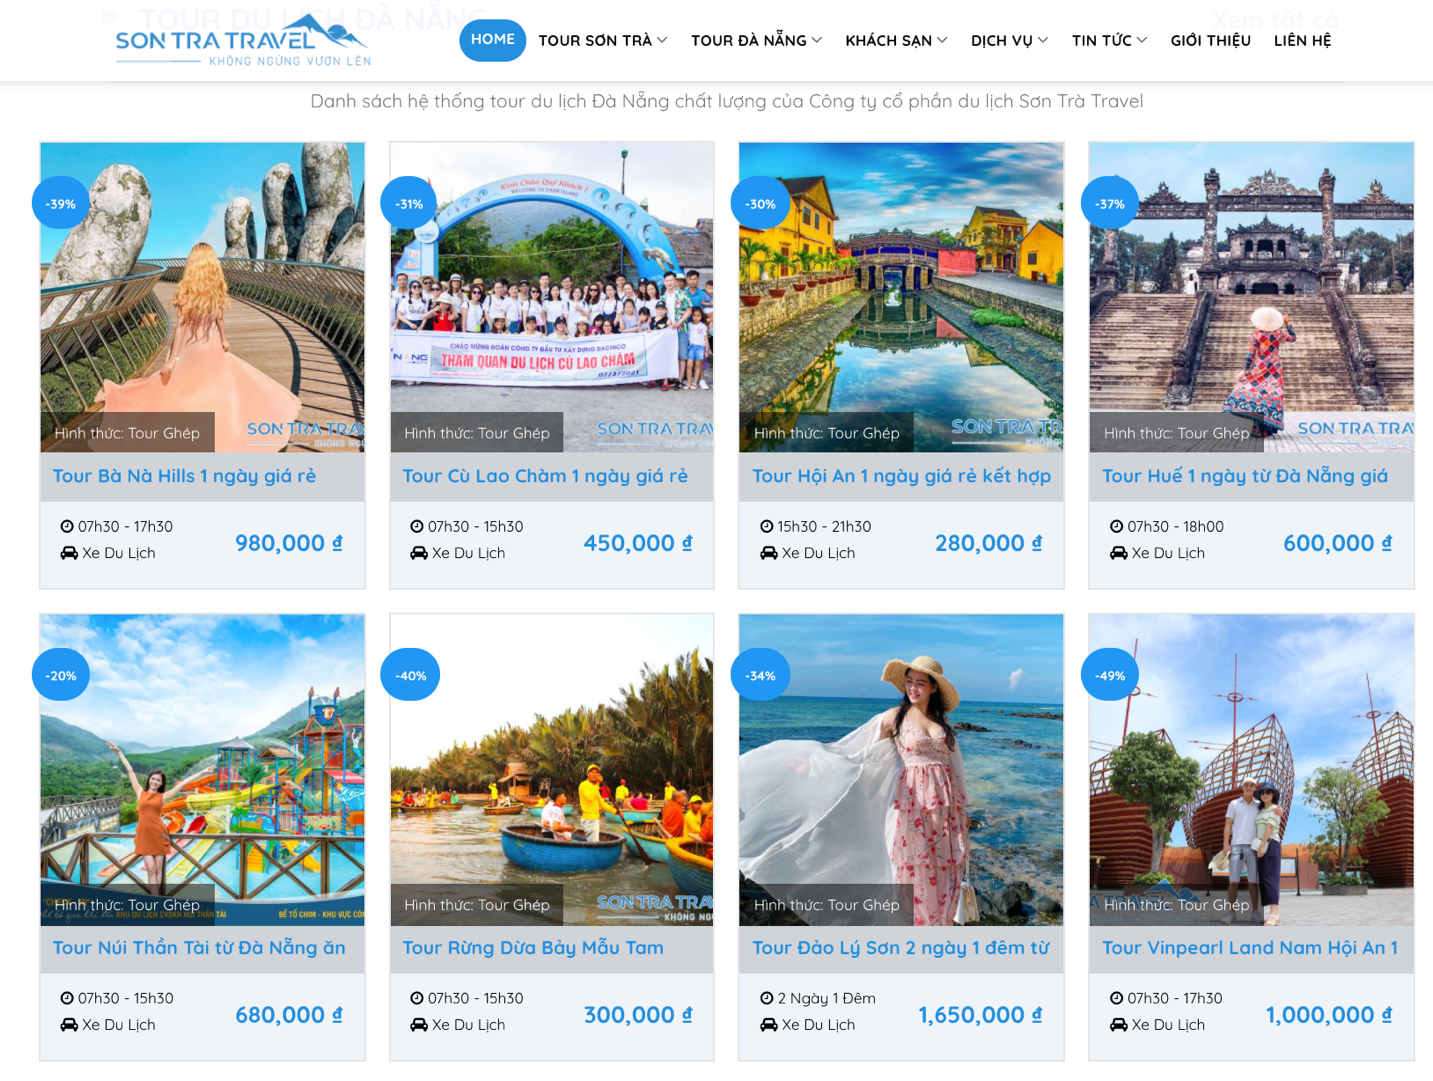 Danh sách các tour du lịch được tổ chức bởi Sơn Trà Travel